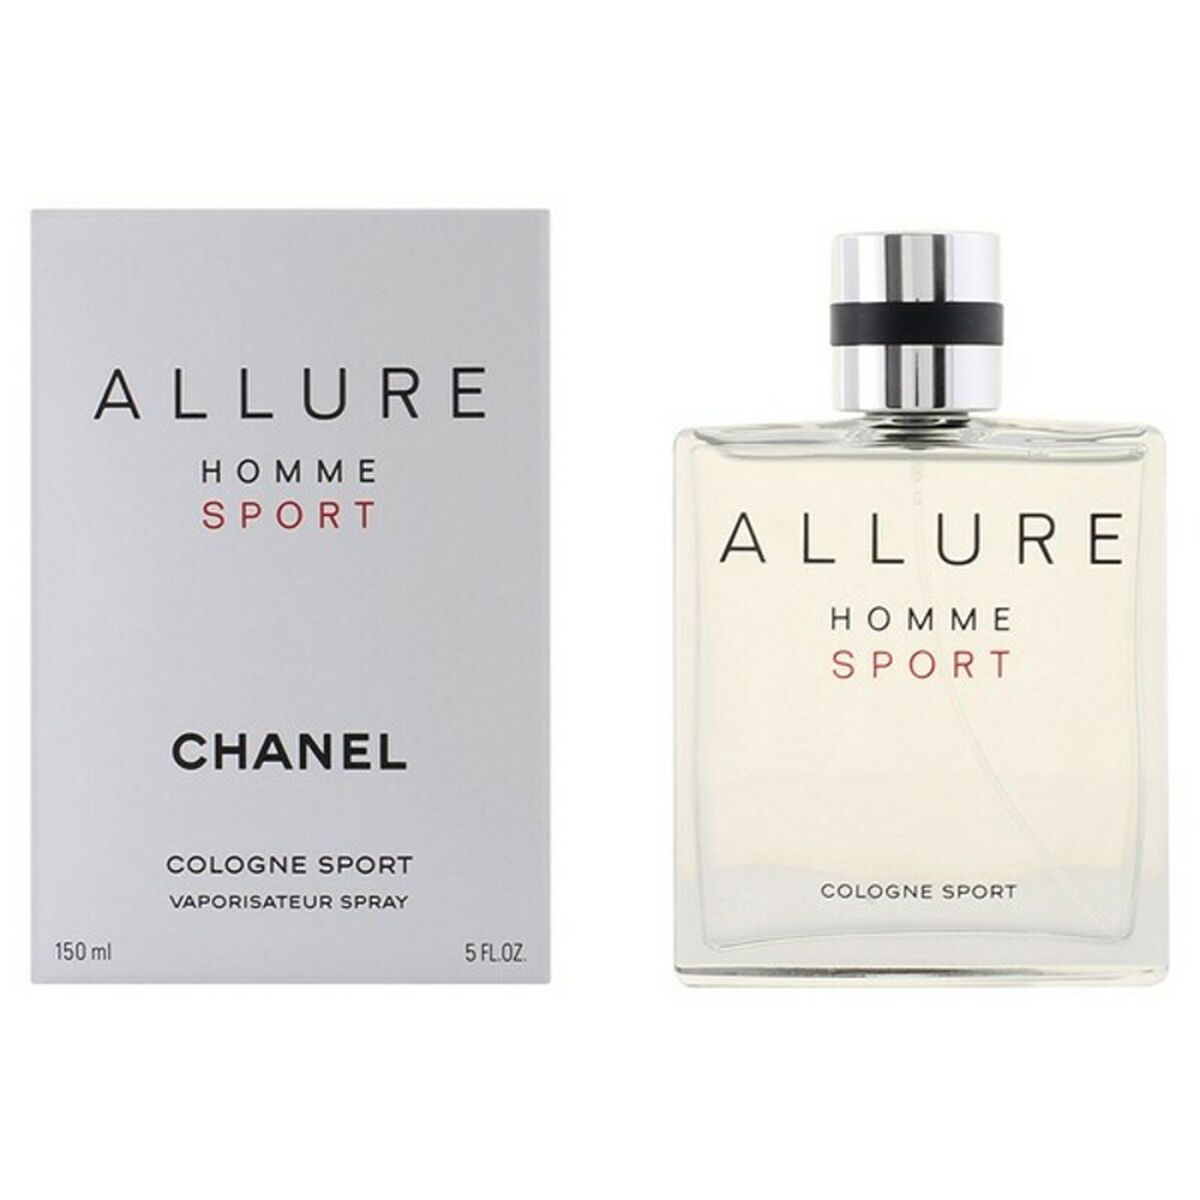 Osta tuote Miesten parfyymi Chanel 157535 EDC 150 ml verkkokaupastamme Korhone: Parfyymit & Kosmetiikka 10% alennuksella koodilla KORHONE